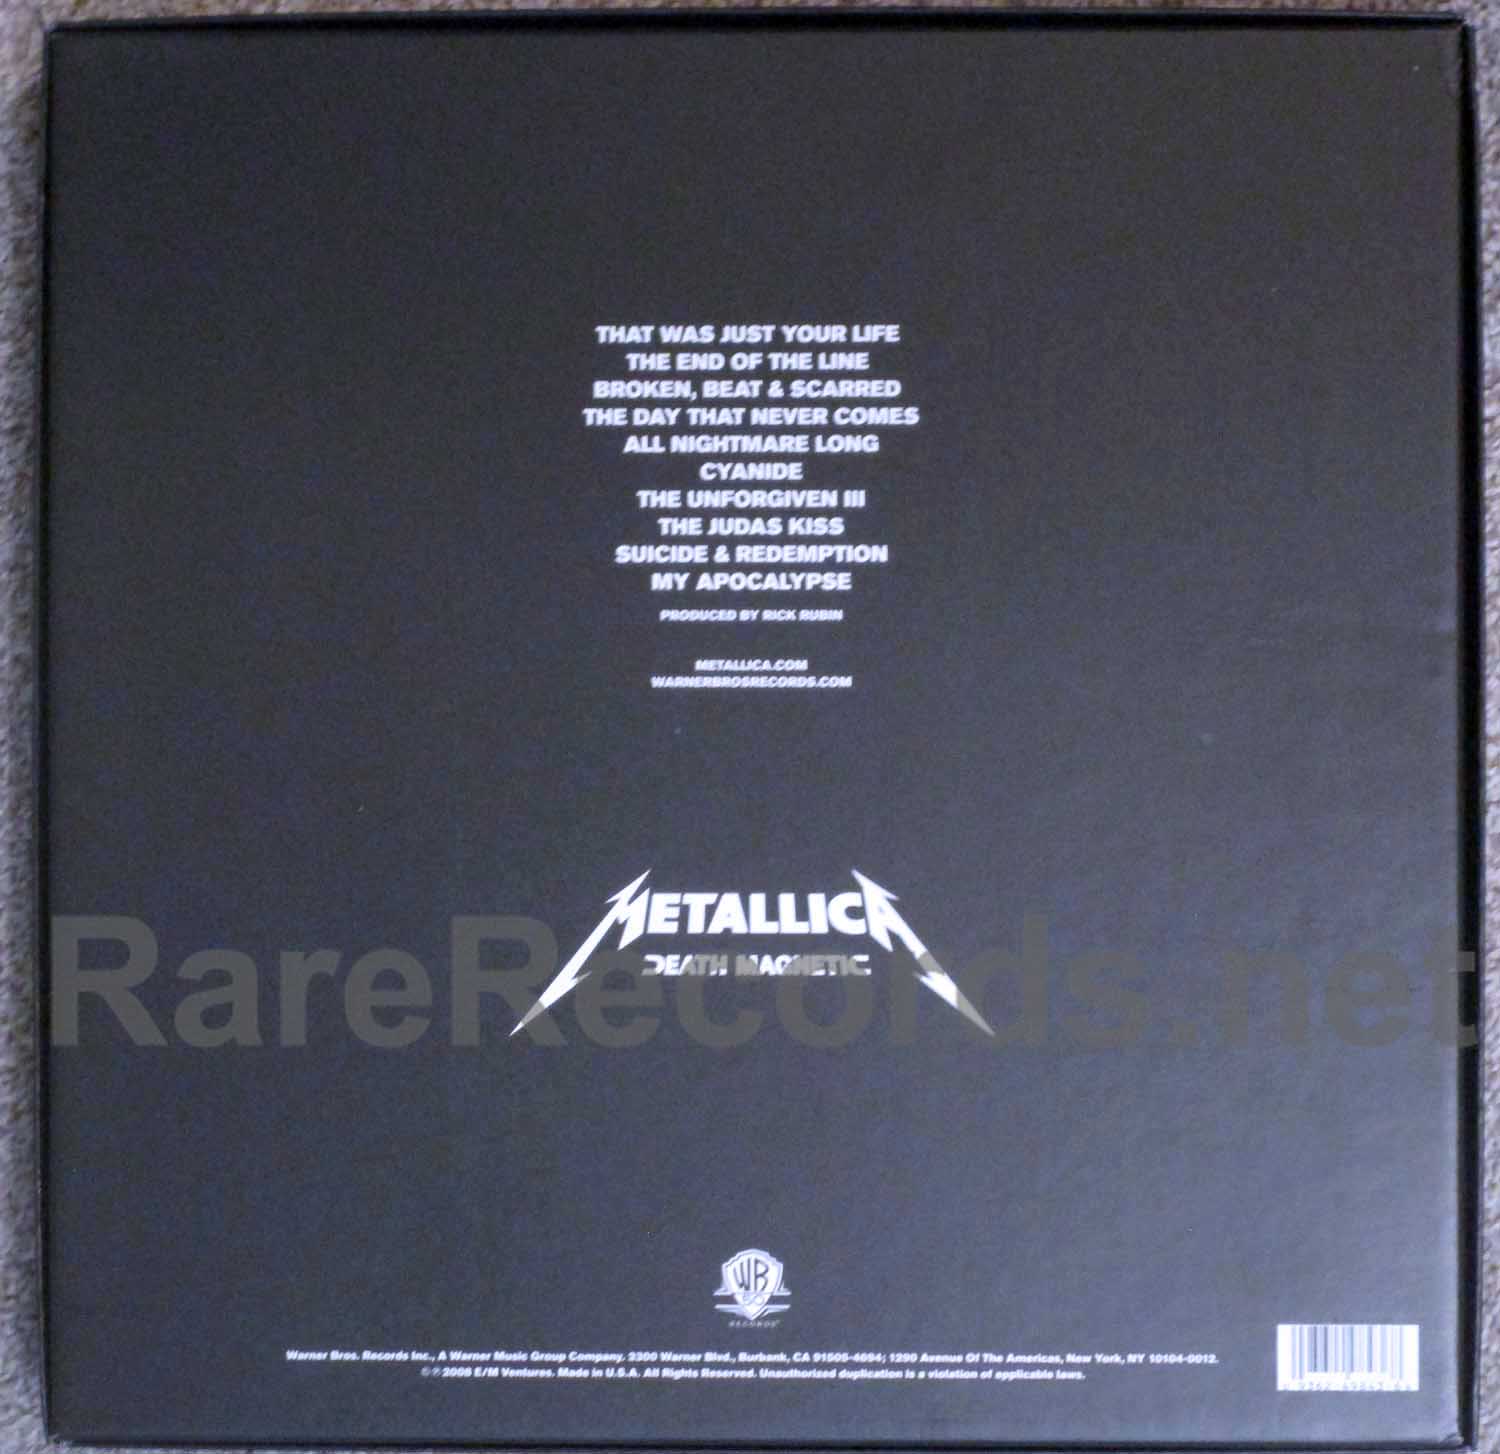 Metallica - Kill 'Em All 2008 U.S. 45 RPM half speed mastered 2 LP set